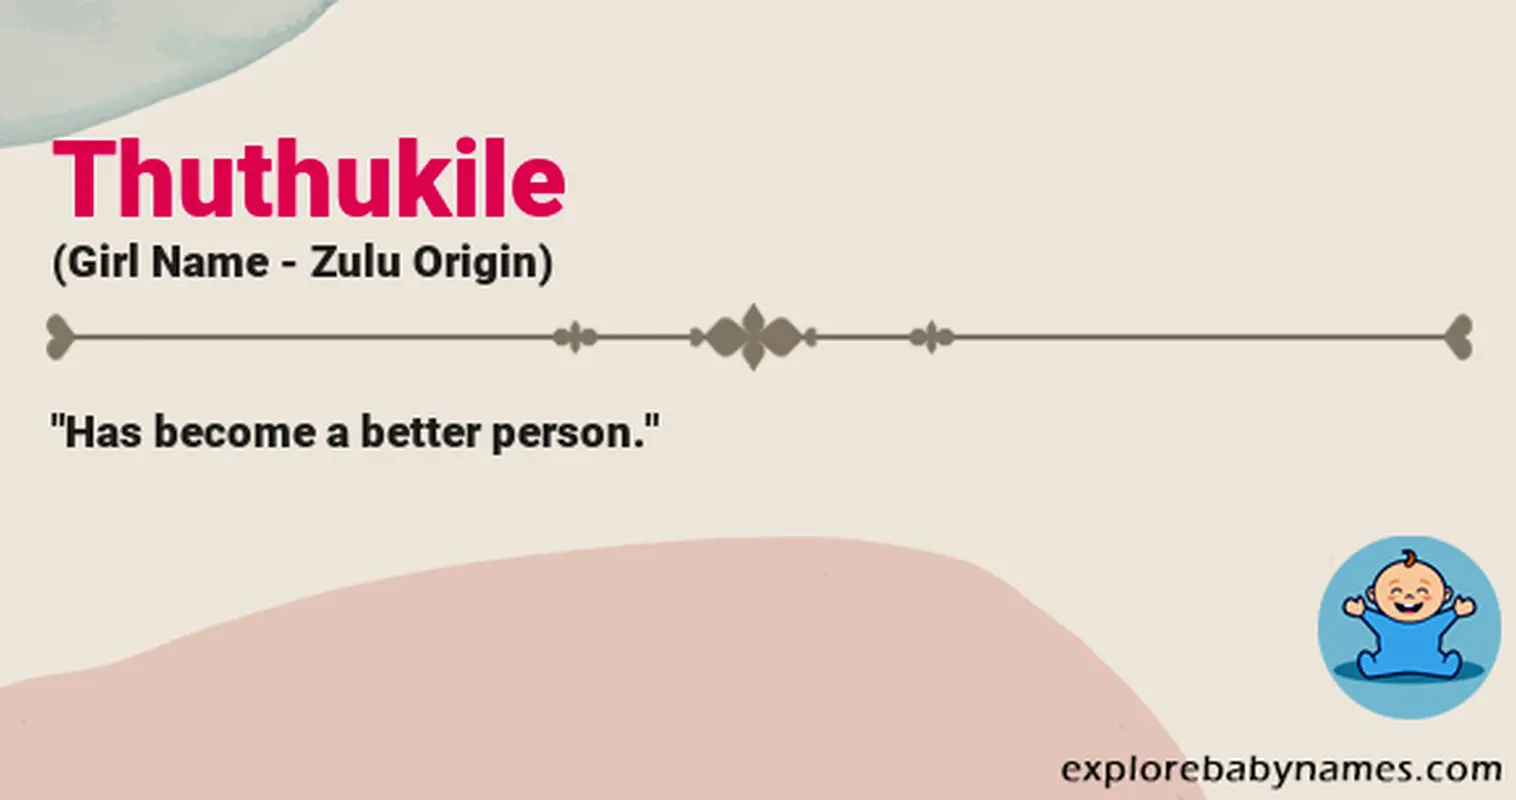 Meaning of Thuthukile